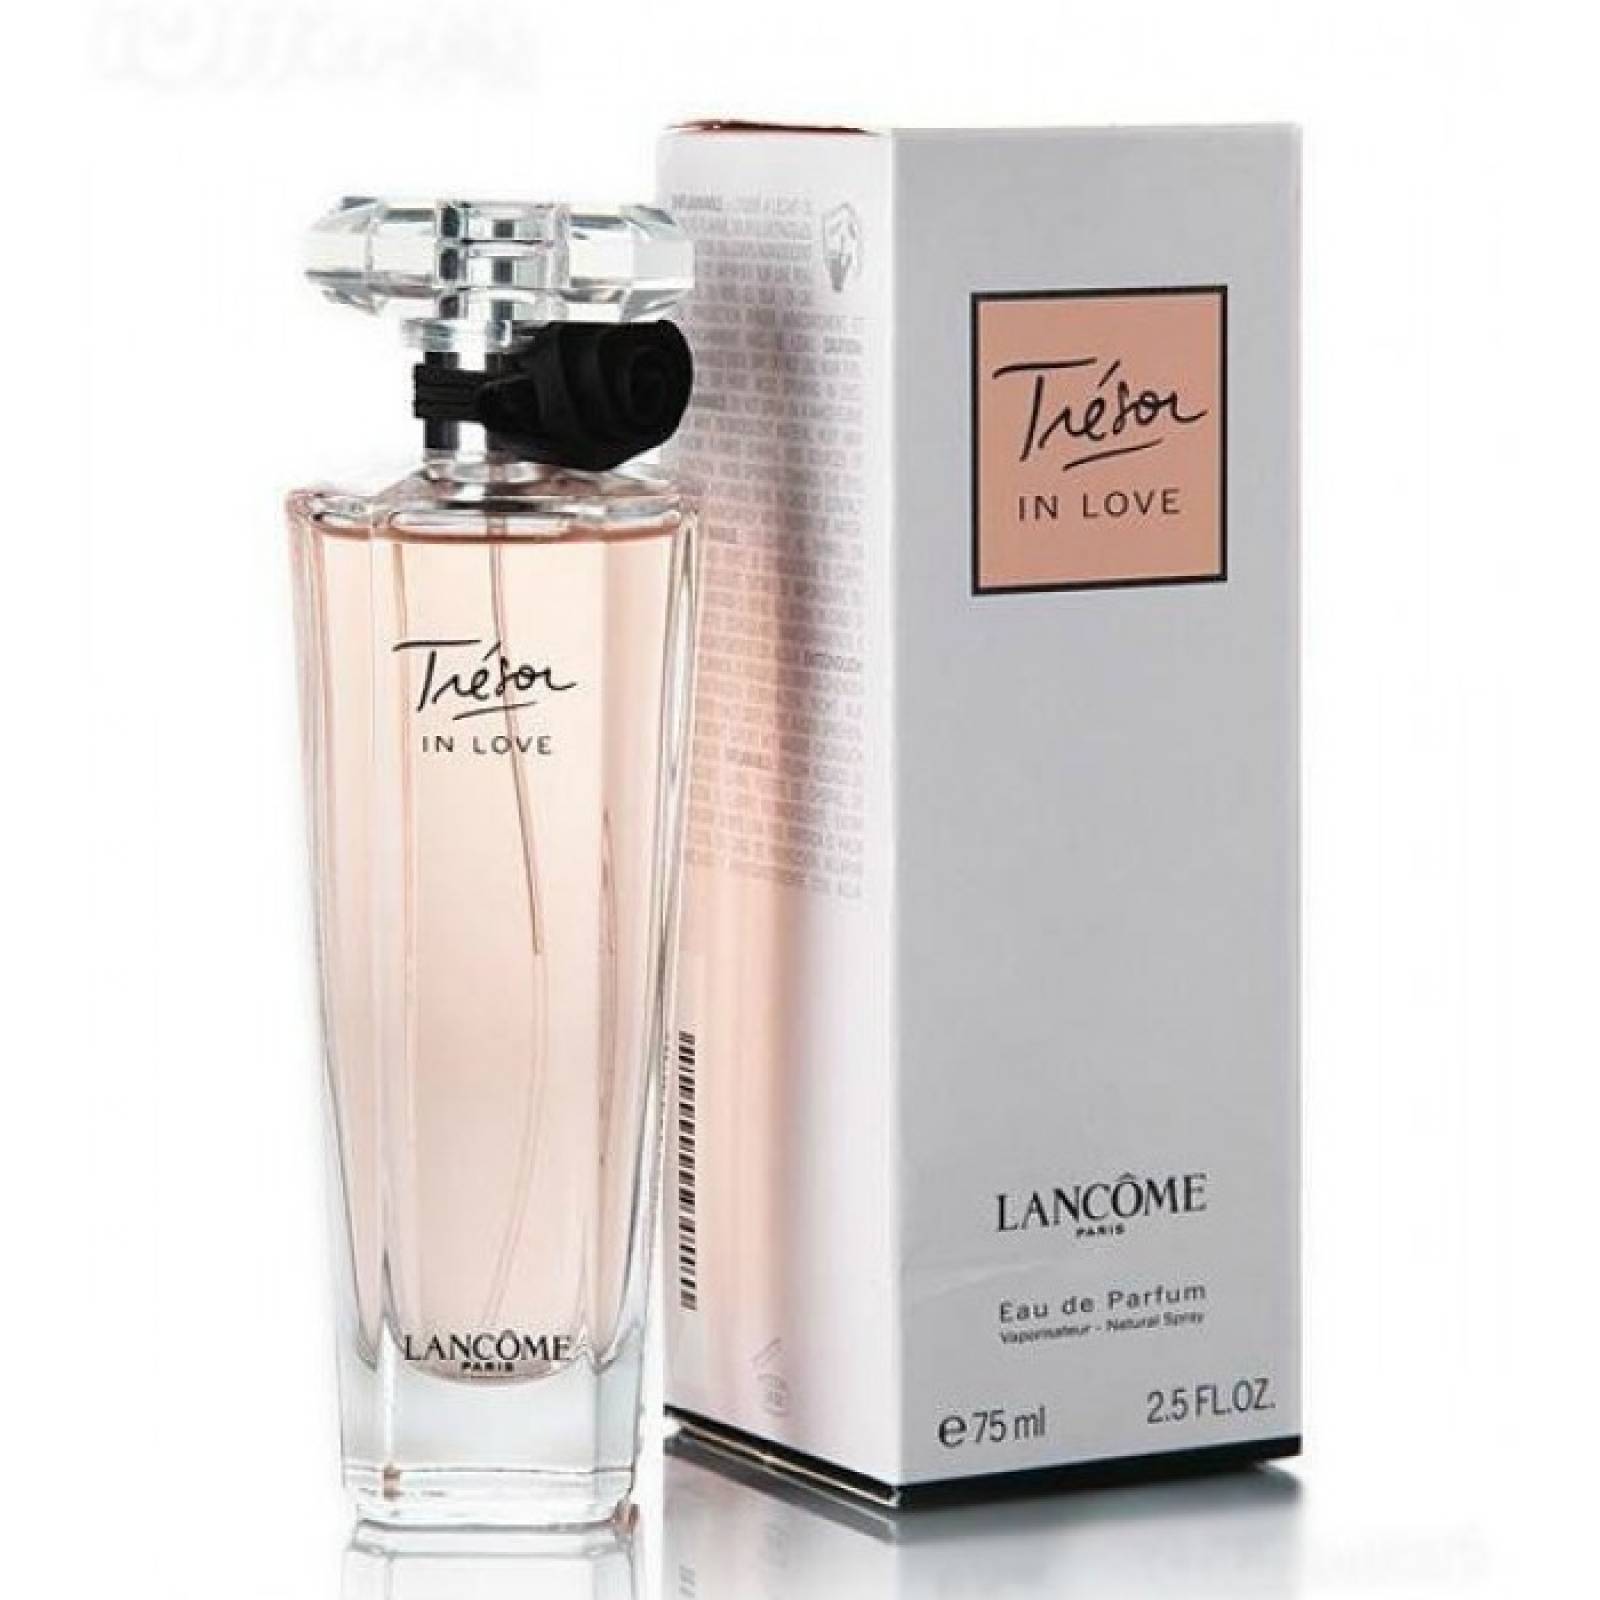 Tresor in Love de Lancome Eau de Parfum 75 ml. Fragancia para Dama